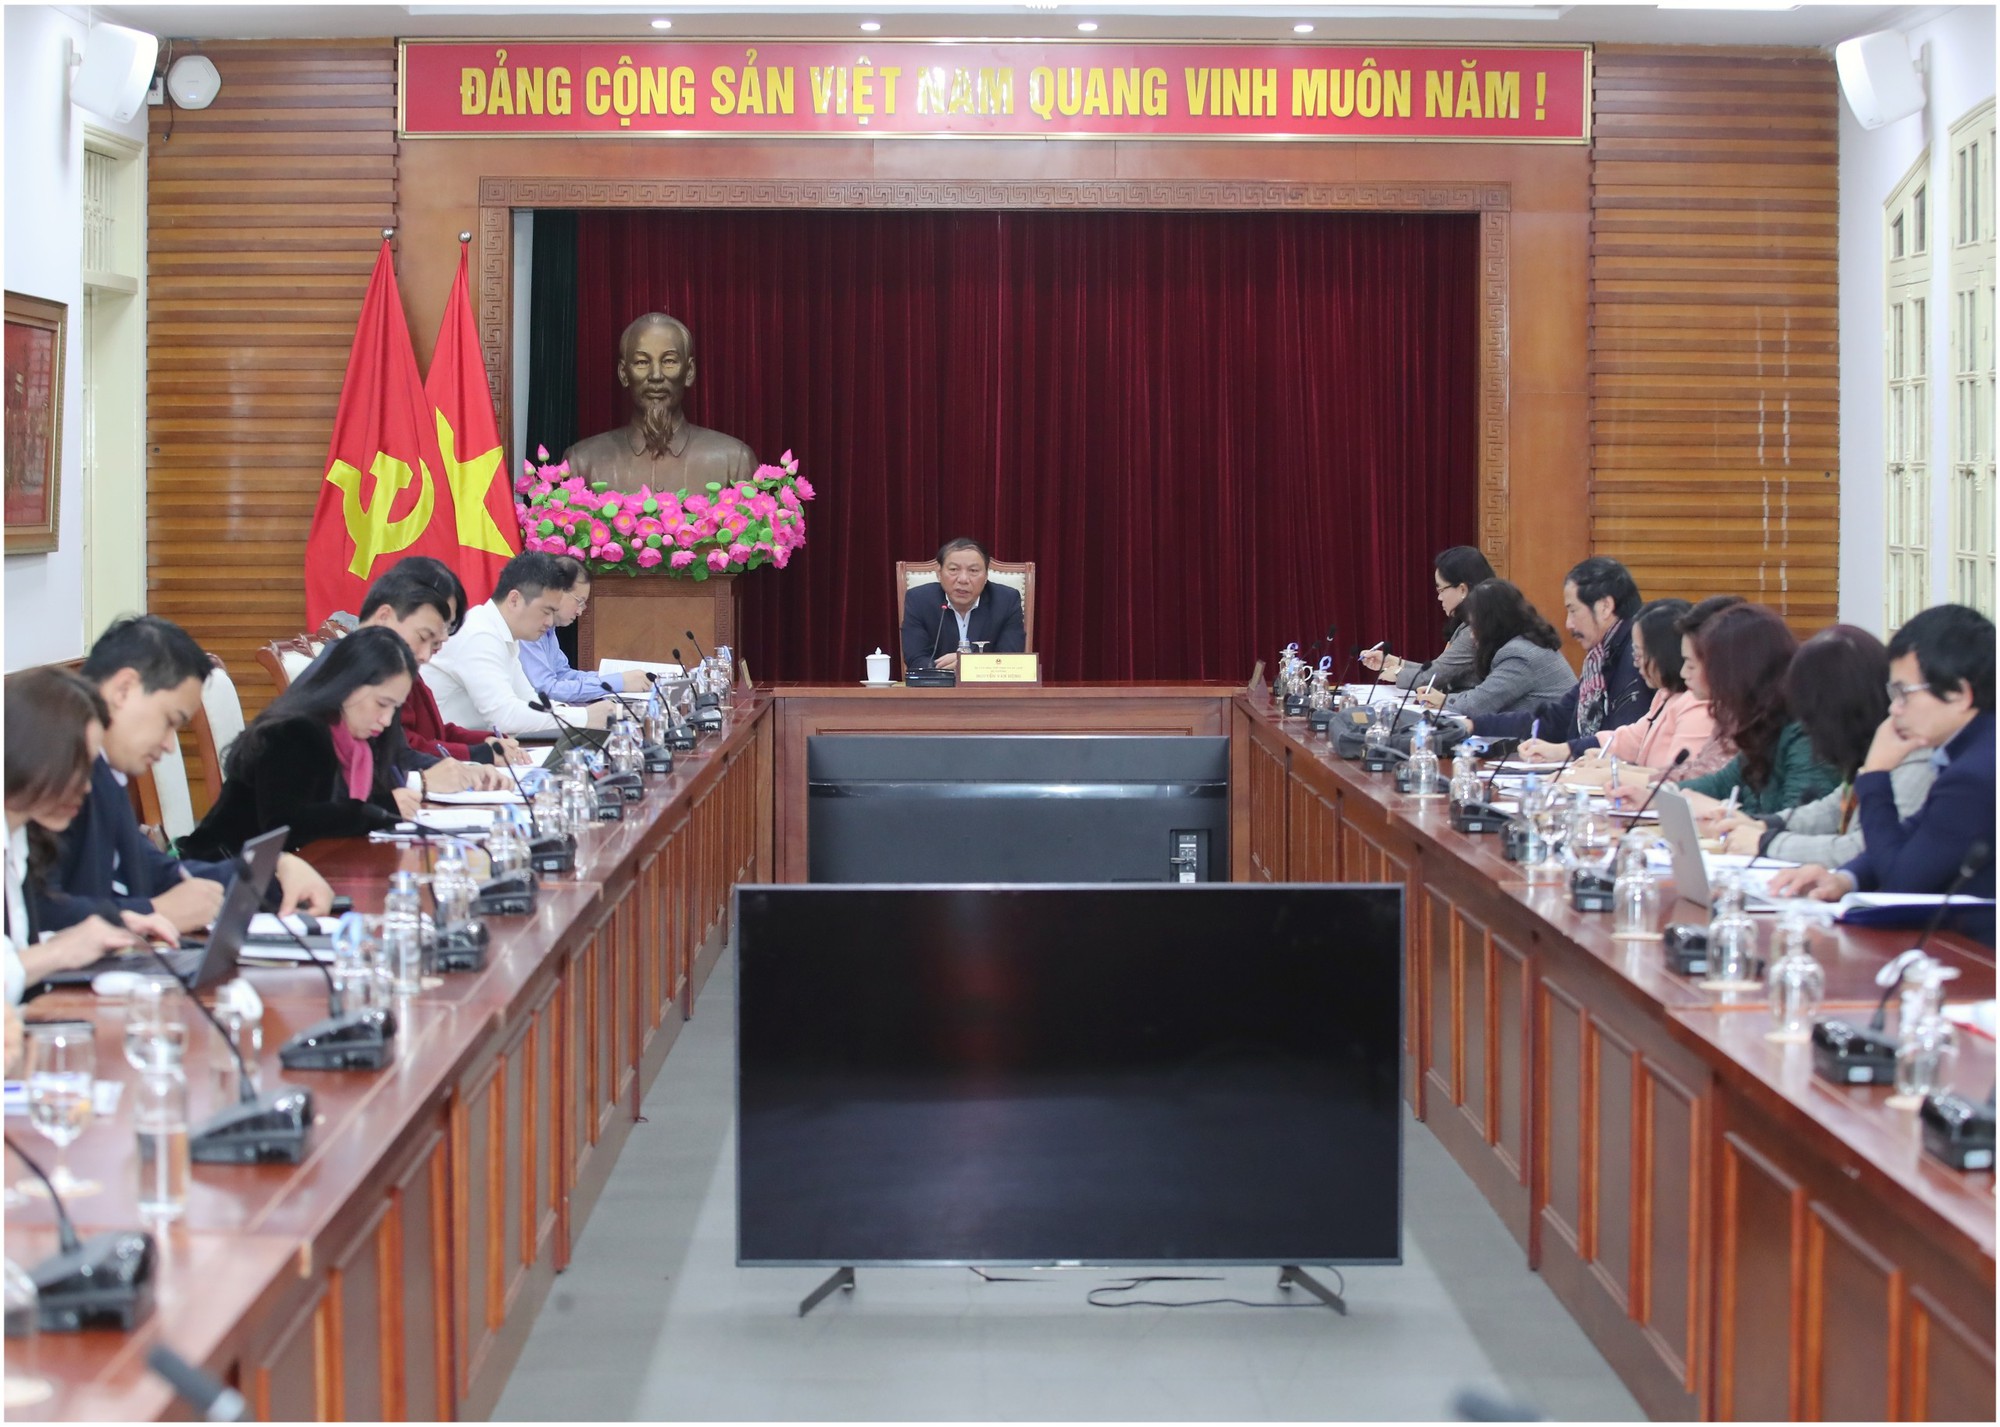 Chủ động, phát huy sức mạnh tổng hợp triển khai tốt các hoạt động kỷ niệm 80 năm Đề cương về Văn hóa Việt Nam - Ảnh 1.